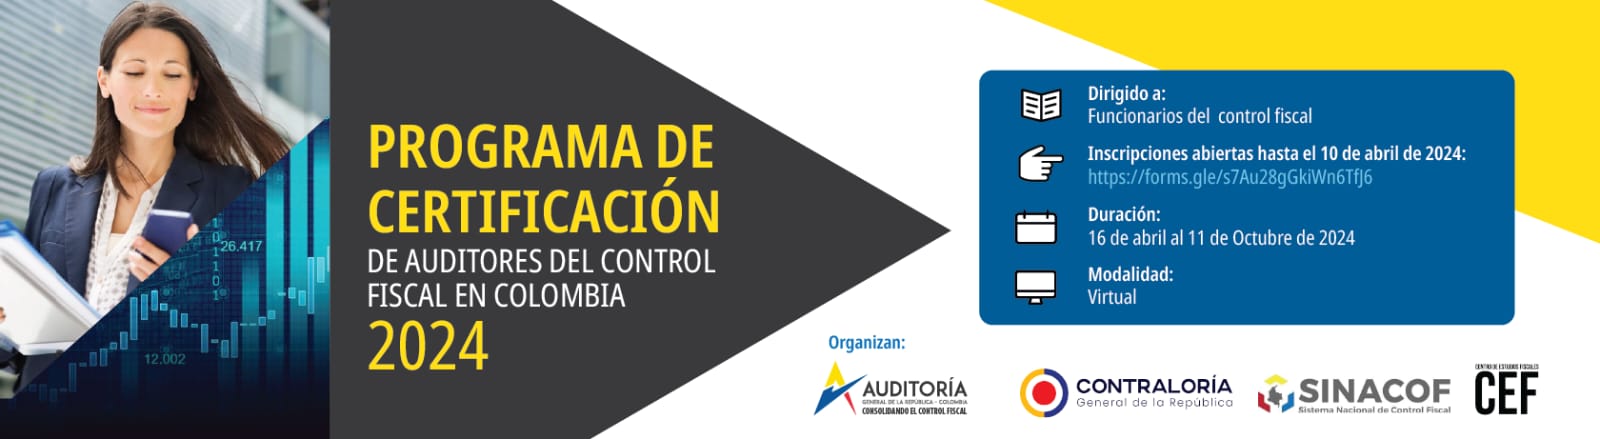 Programa de certificación de auditores del control fiscal en Colombia. Ciclo 2024. inscripciones abiertas. Organizan Auditoría General de la República, Contraloría General de la República, Sinacof, CEF